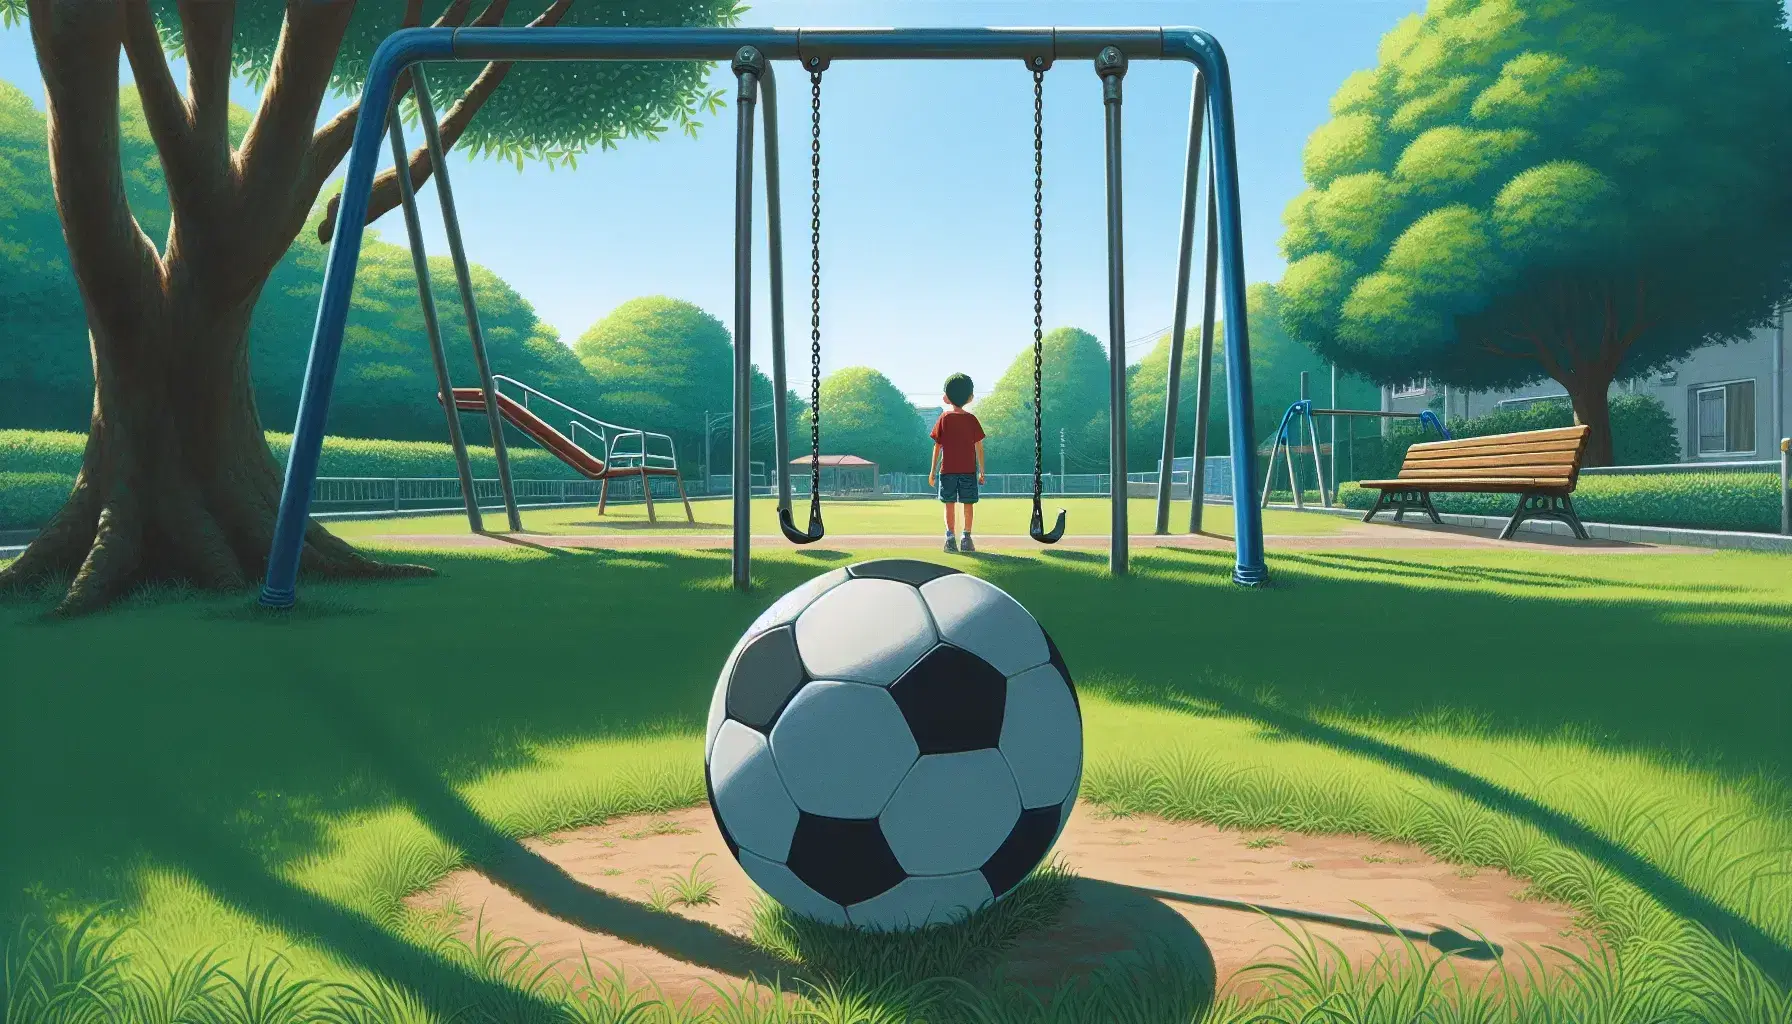 Pelota de fútbol en primer plano con niño al fondo en parque soleado, columpio en movimiento y árbol frondoso.